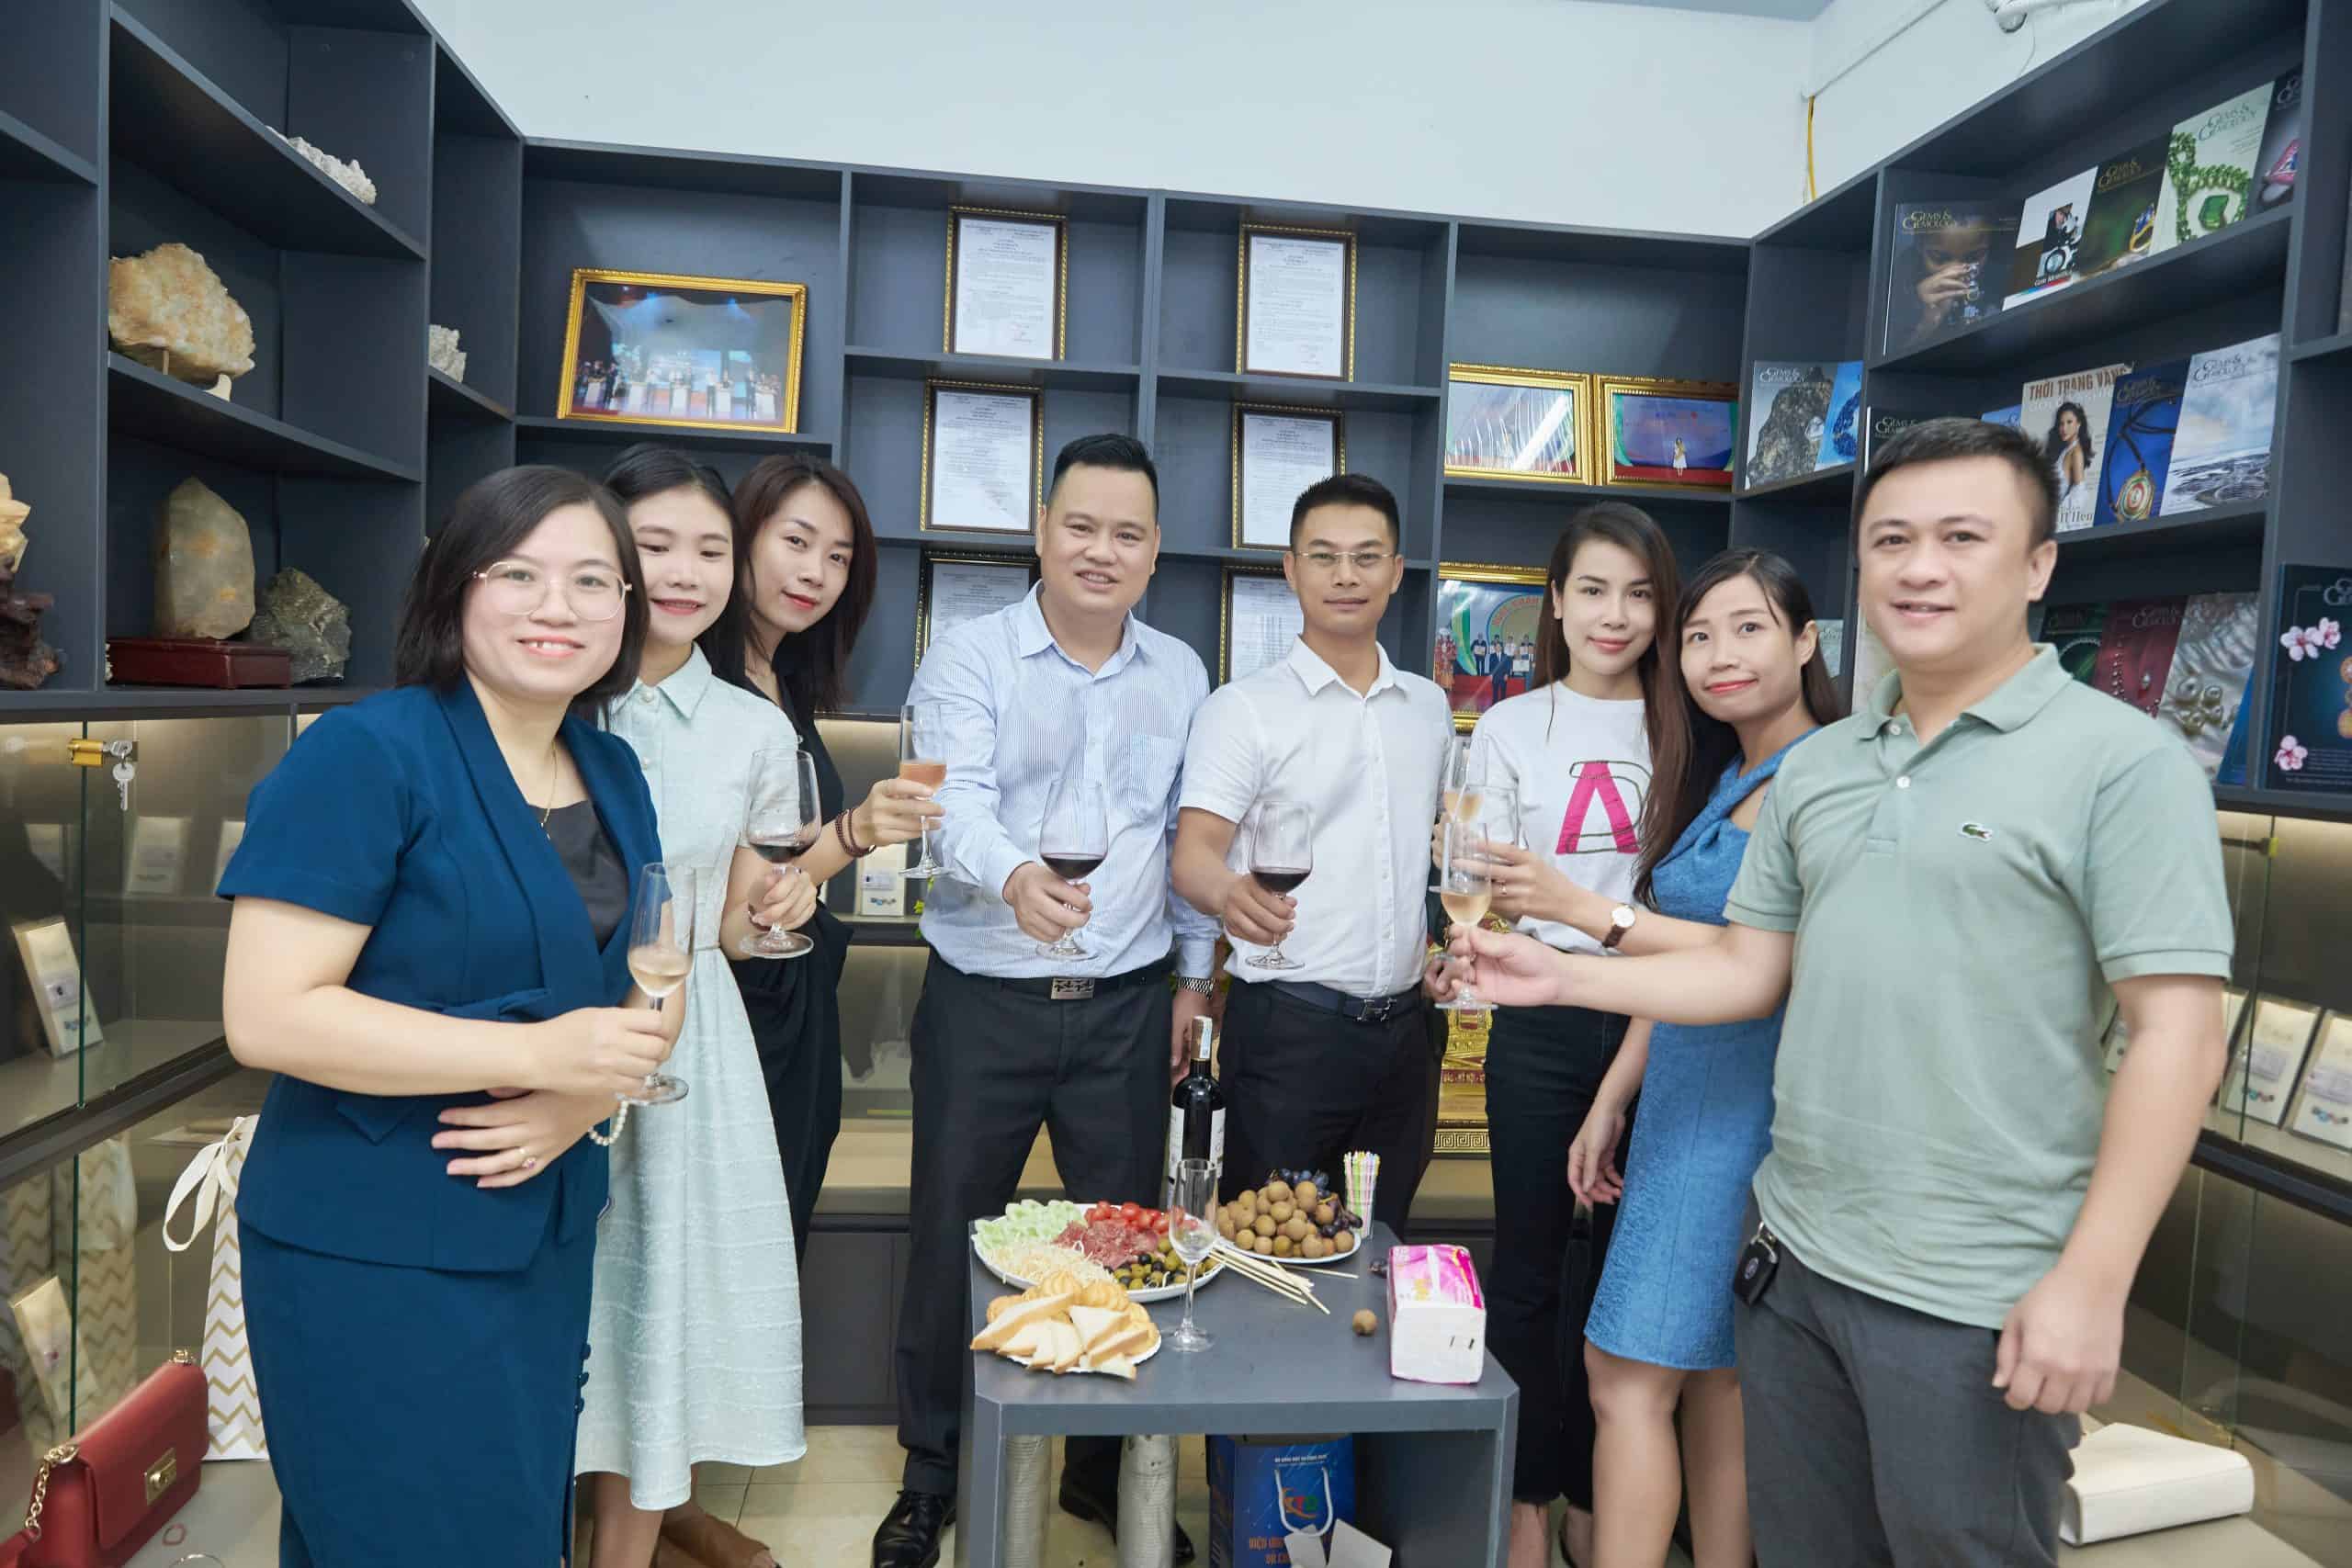 TS. Vũ Thị Nguyệt giữ chức viện trưởng viện Mỹ nghệ Kim hoàn Đá quý Việt Nam cùng các đồng nghiệp chúc mừng khai trương